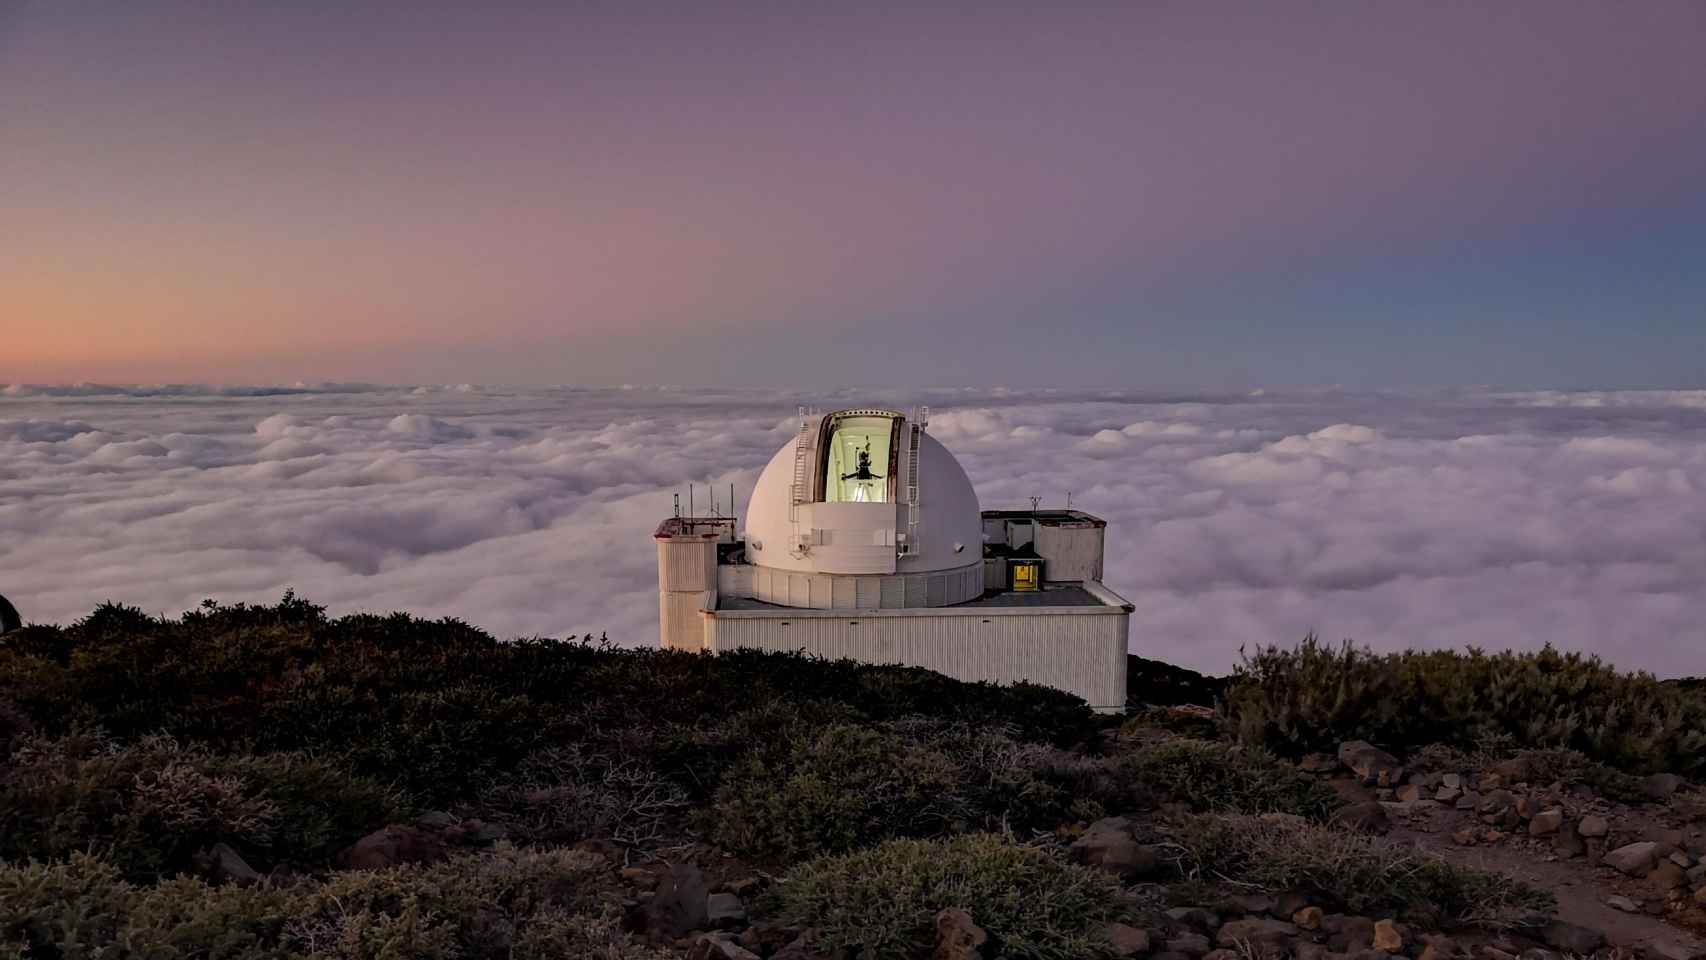 Telescopio en el observatorio de los Roques de los Muchachos, La Palma